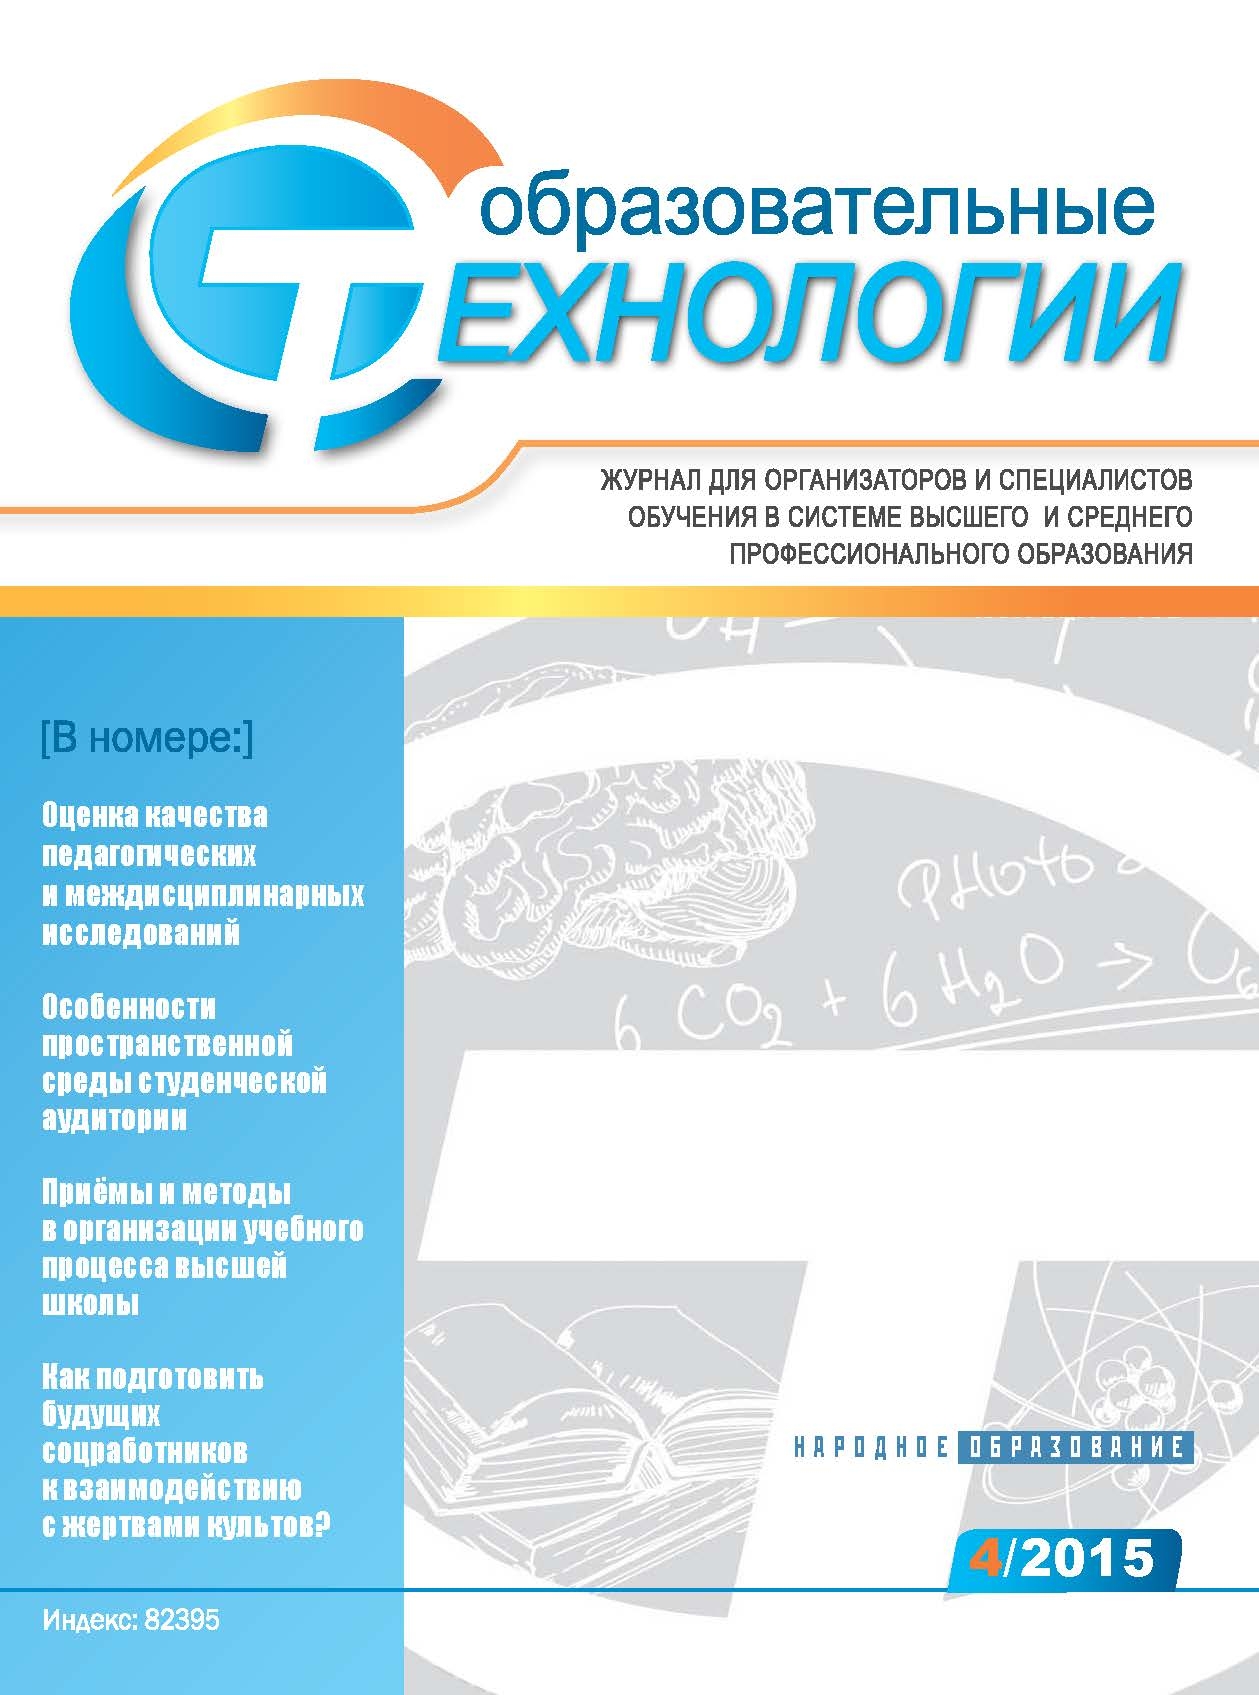 Опубликован №2 журнала «Образовательные технологии» за 2015 г.